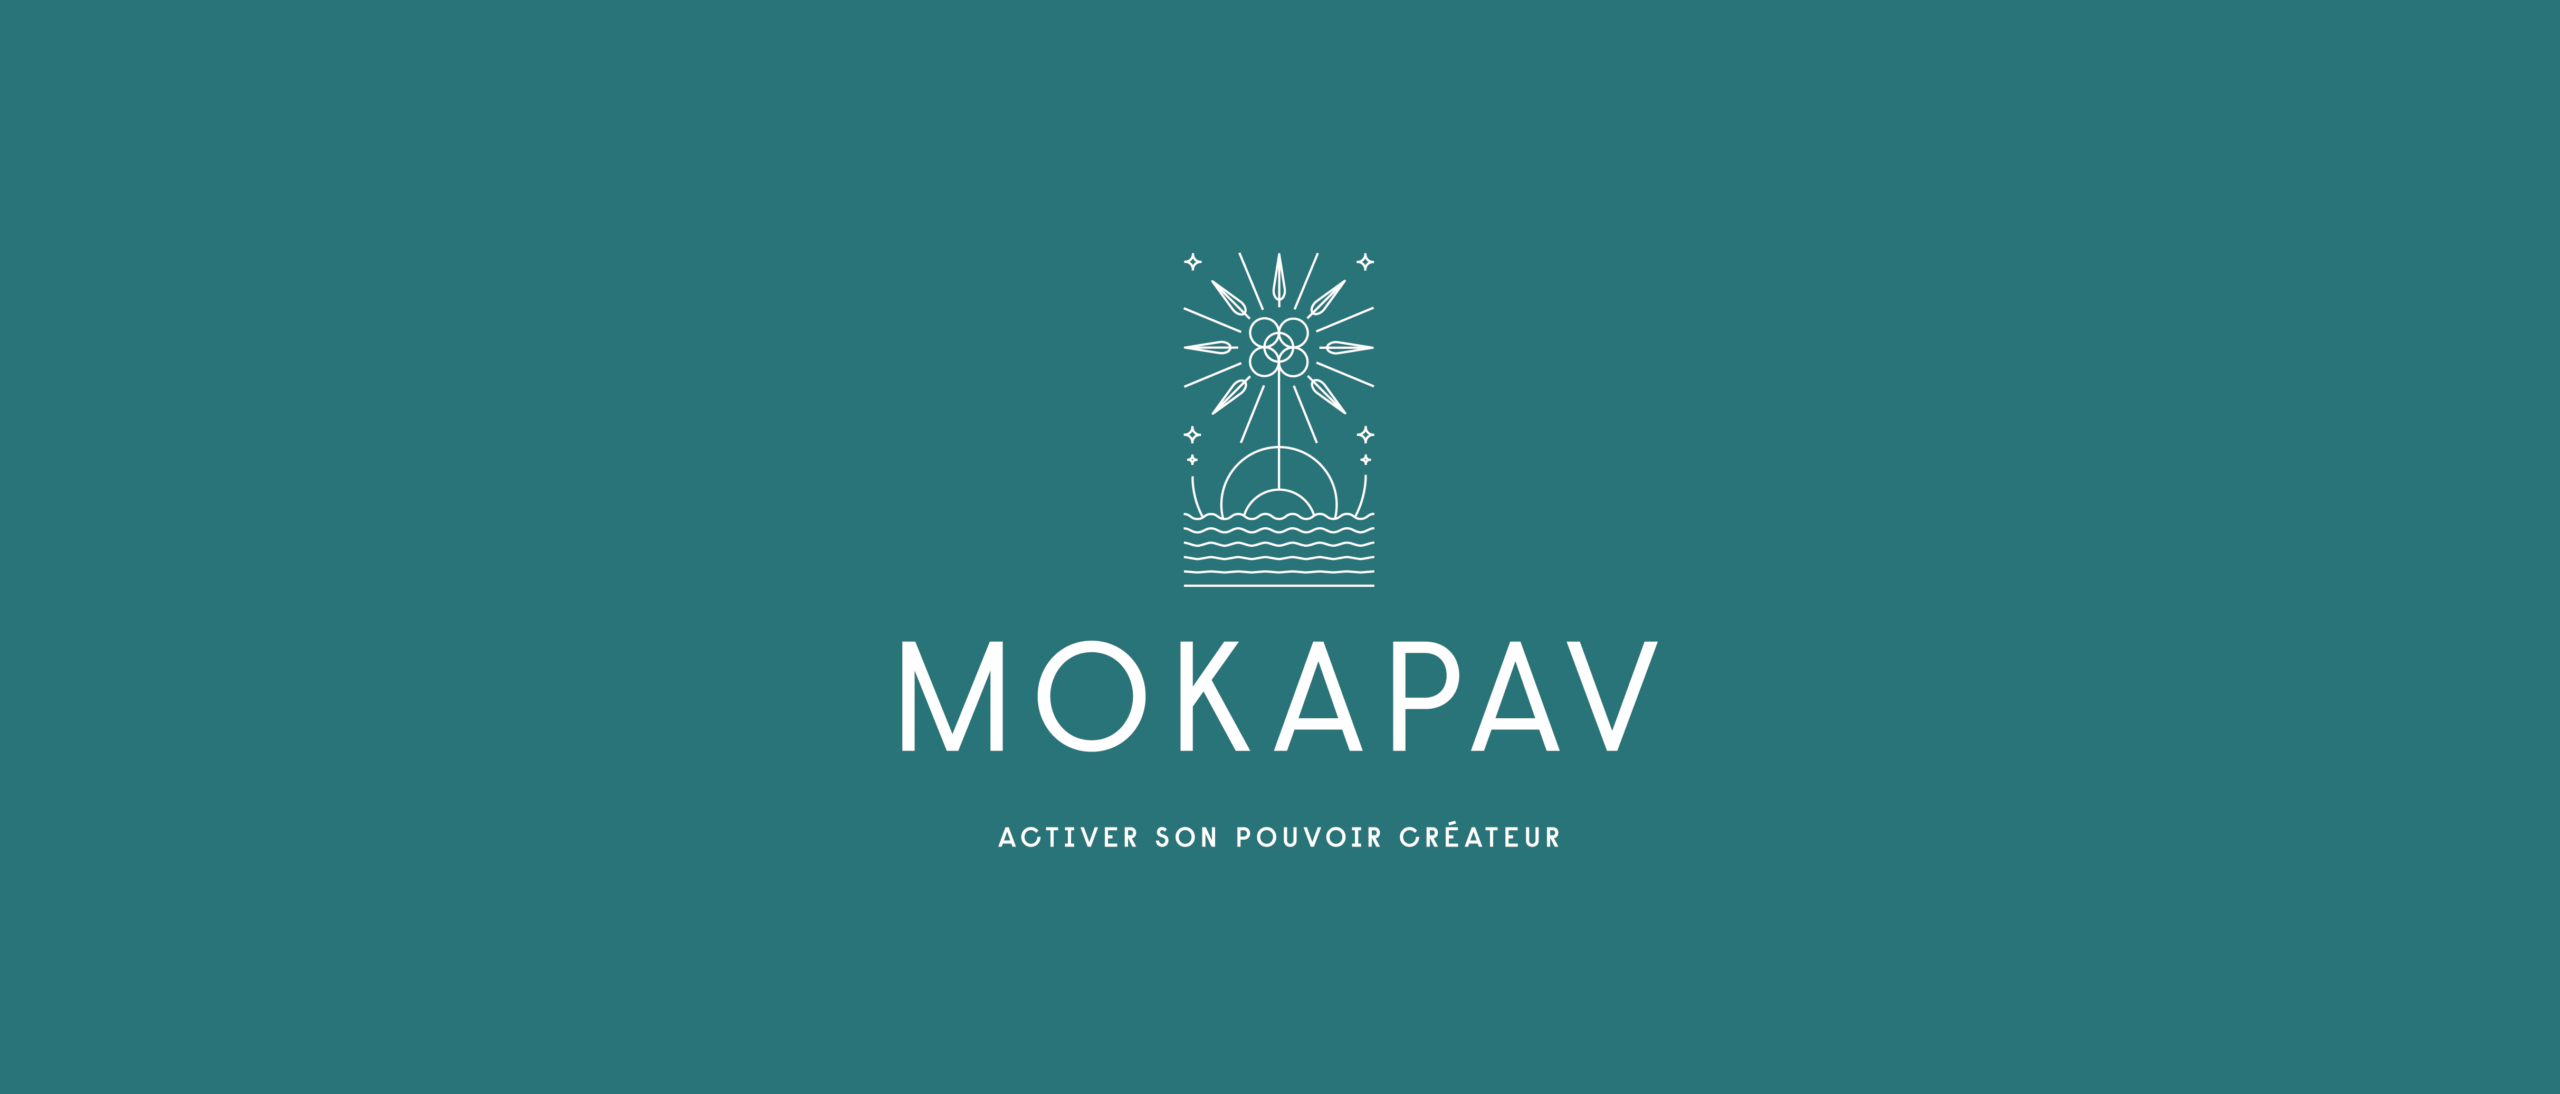 logo mokapav activer son pouvoir créateur